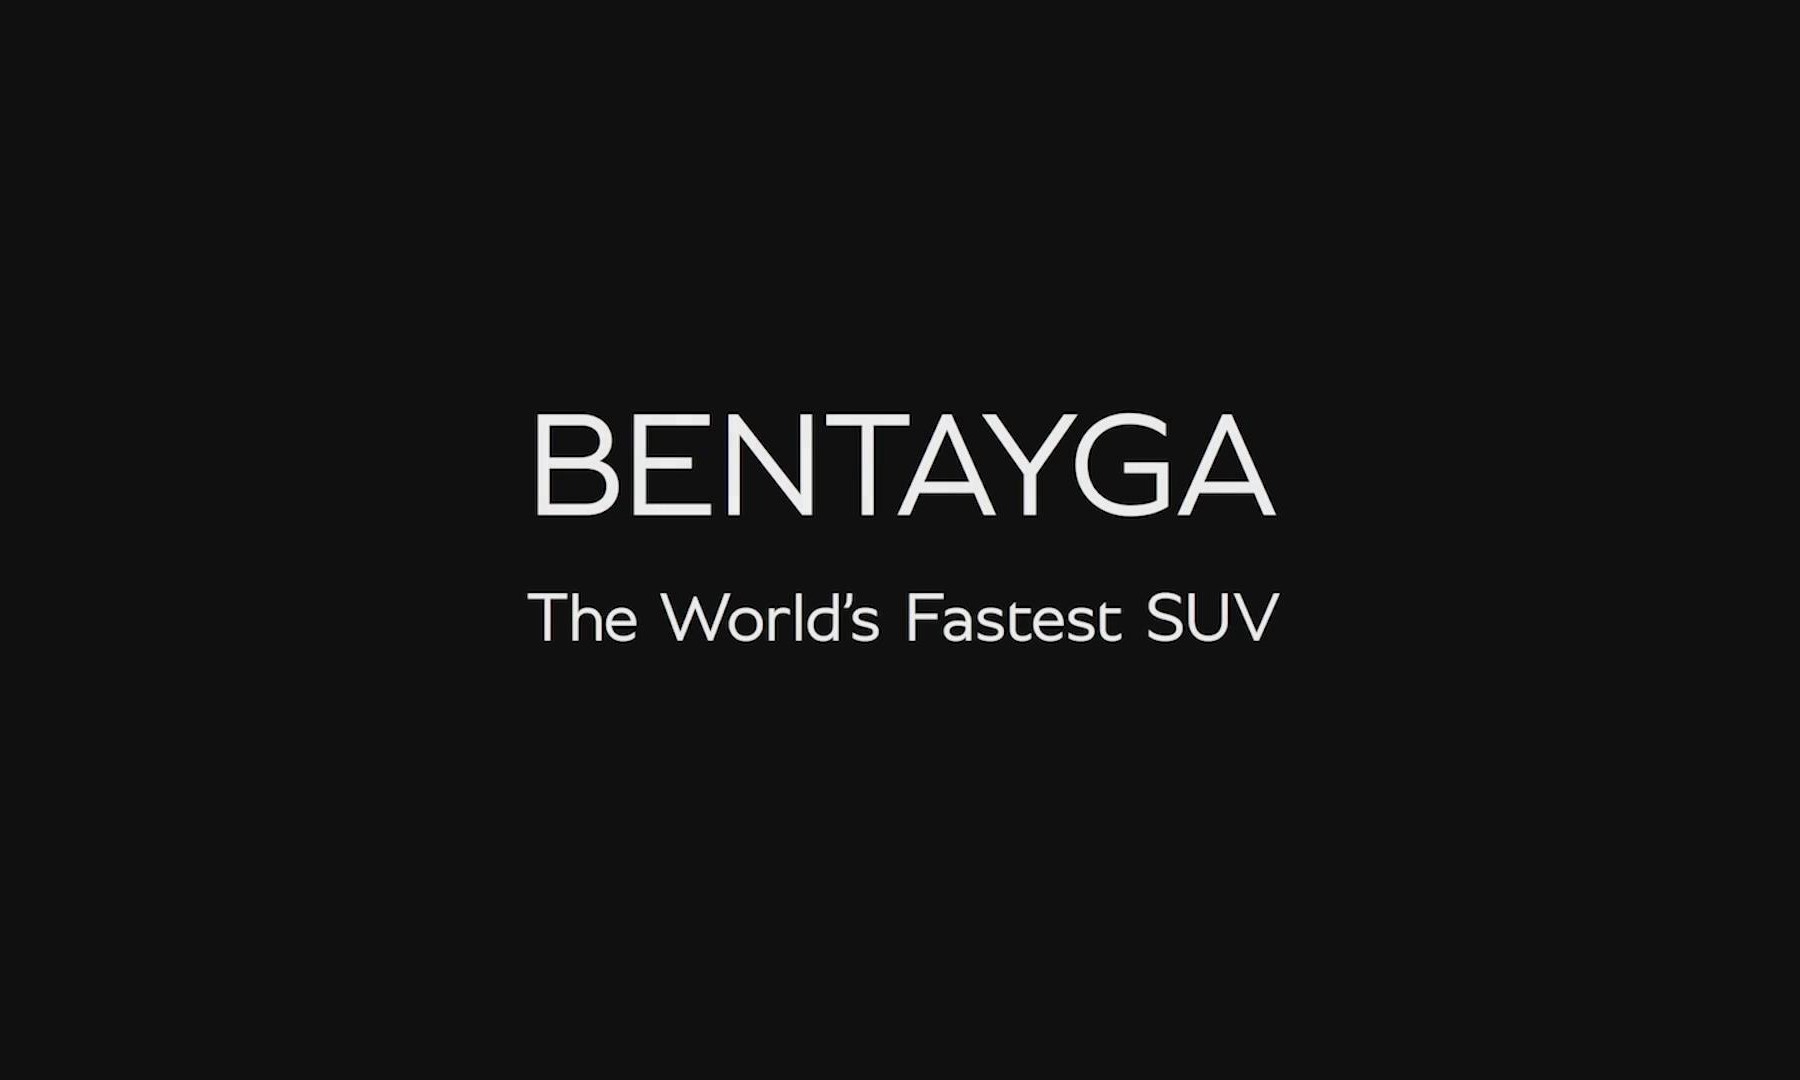 史上最快 SUV，Bentley Bentayga 速度测试短片发布